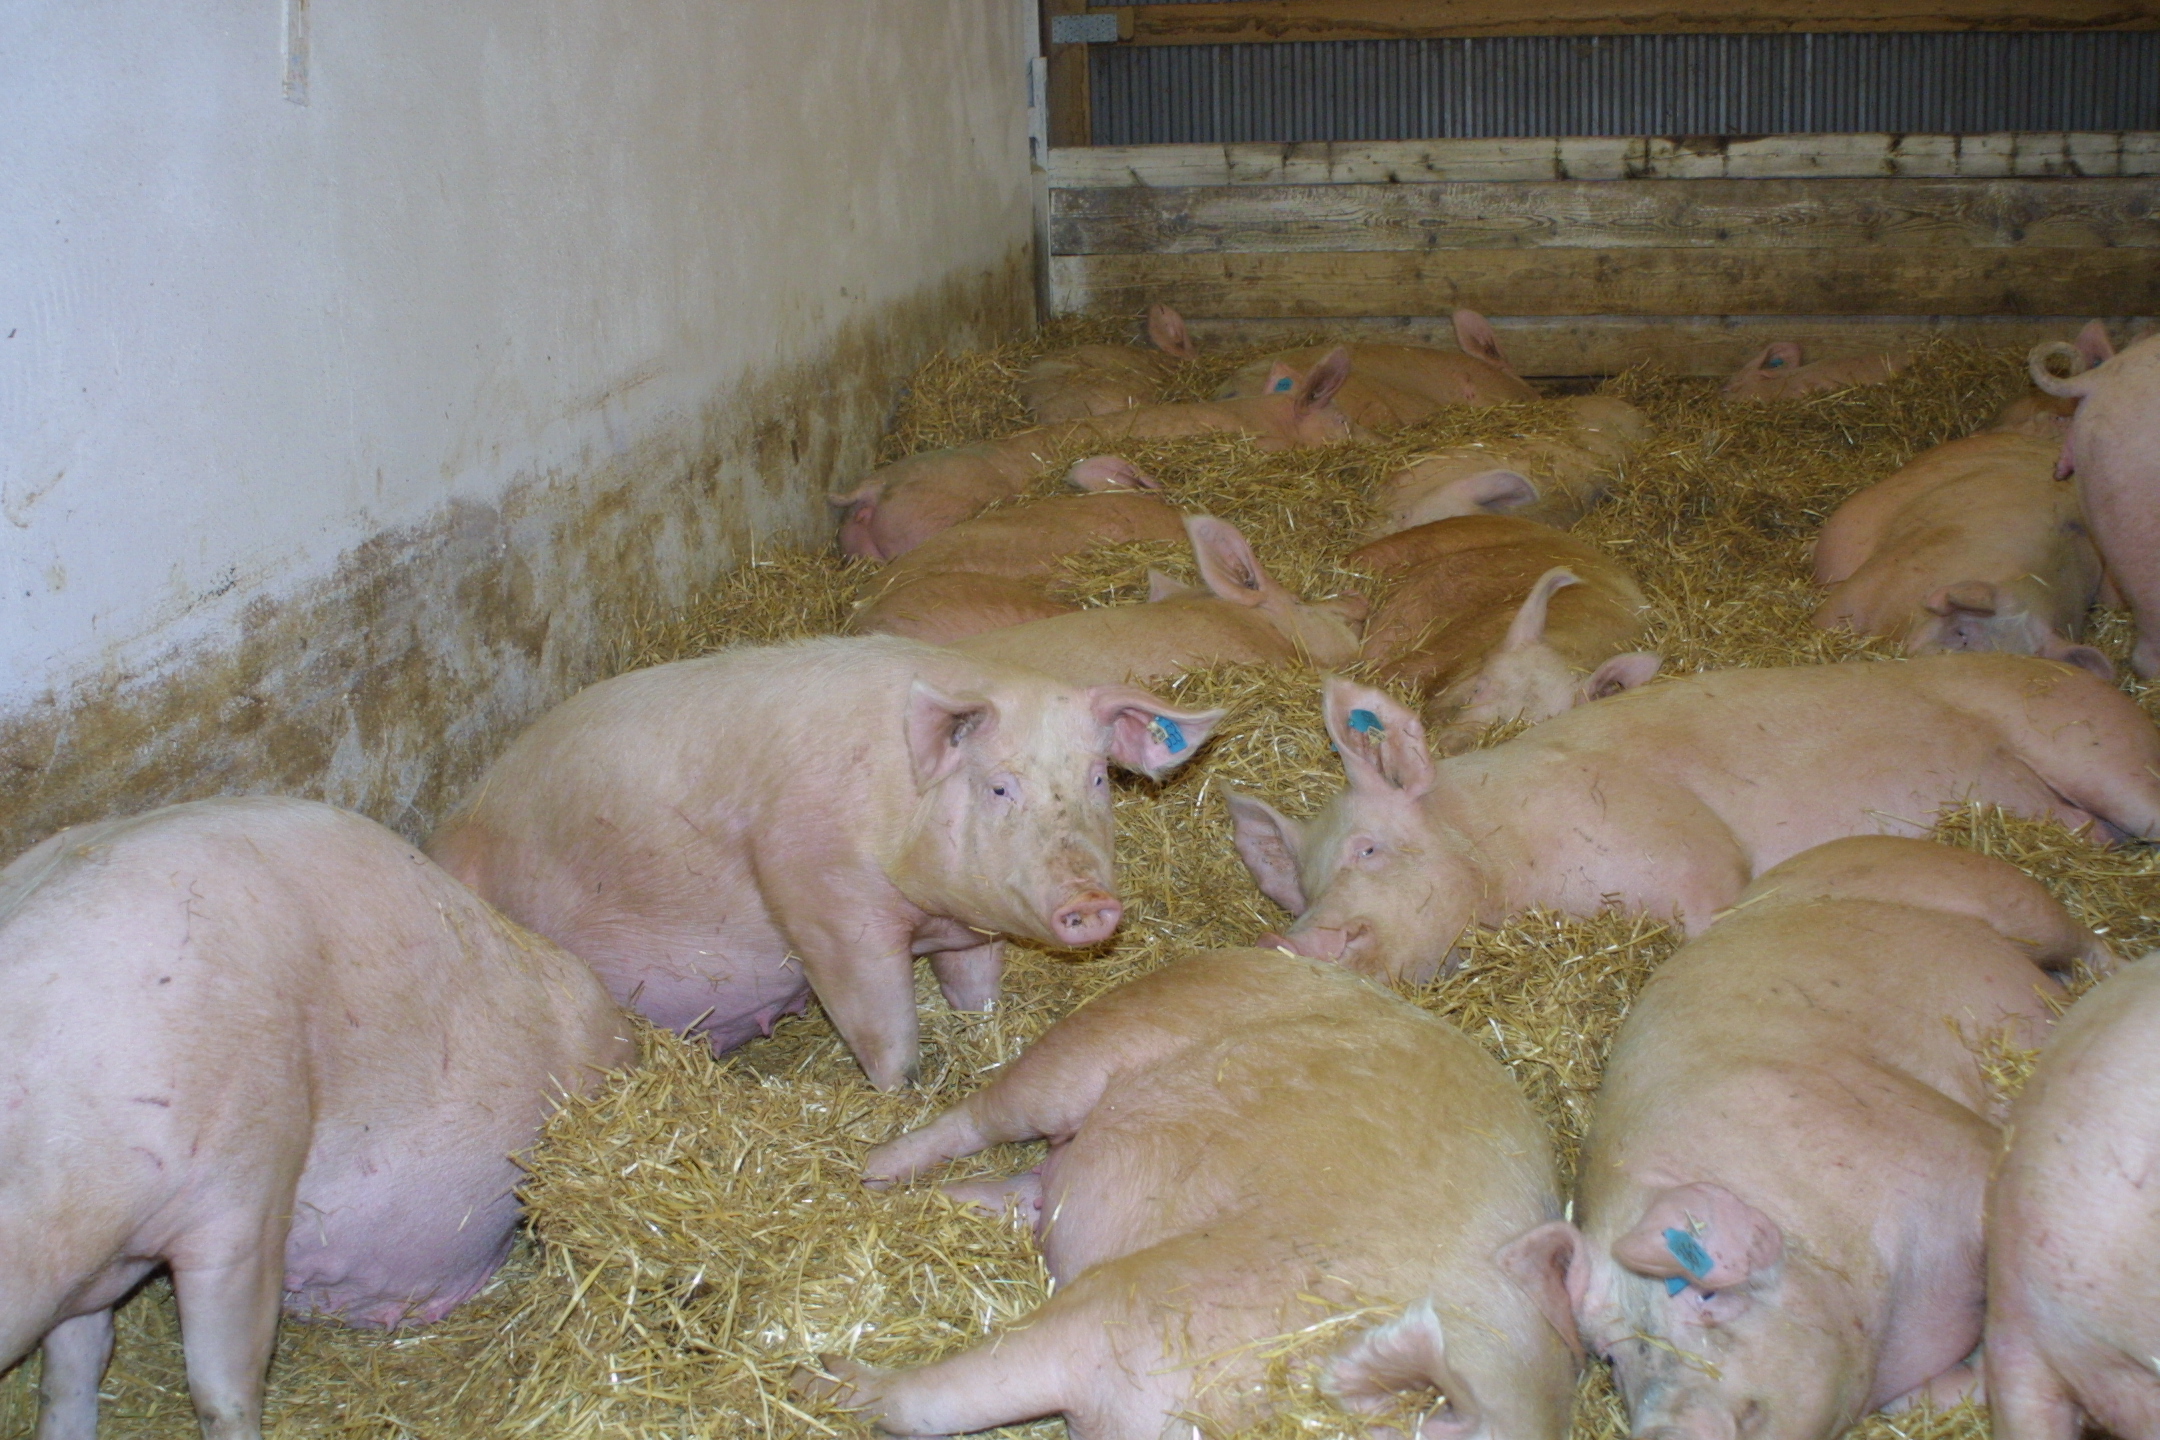 Themen rund um die Schweinehaltung werden beleuchtet